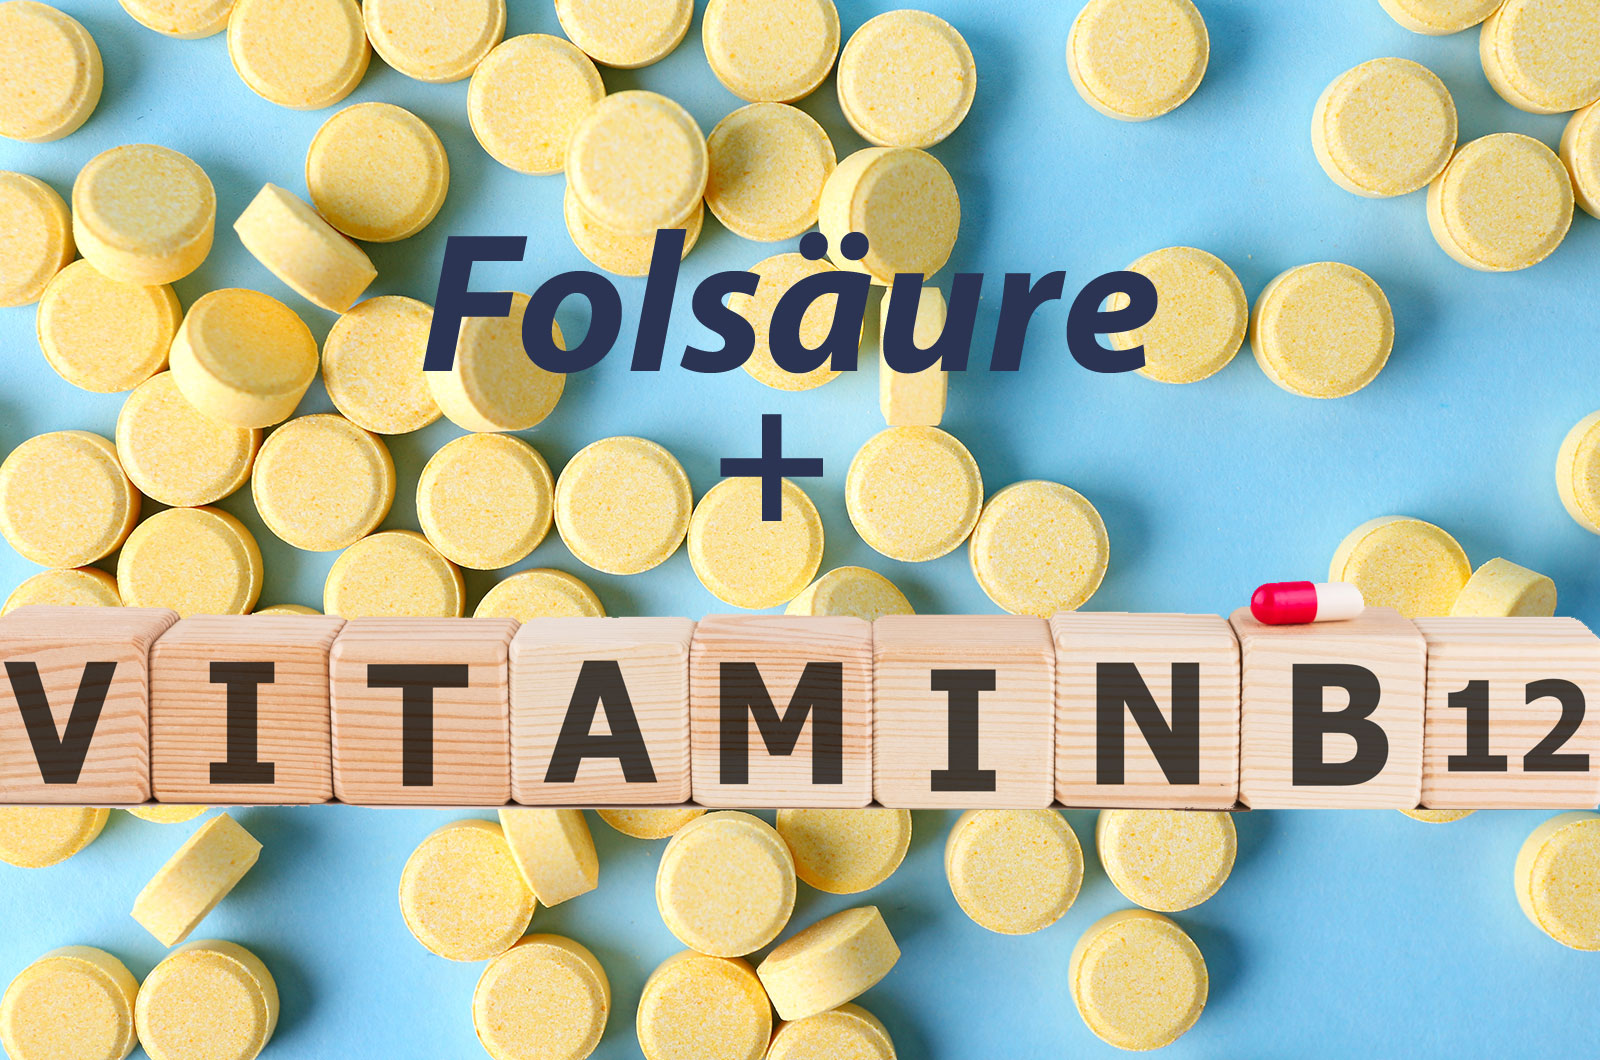 Folsäuretabletten als Nahrungsergänzungsmittel und Schriftzug Vitamin B12, mit Holzbausteinen gesetzt